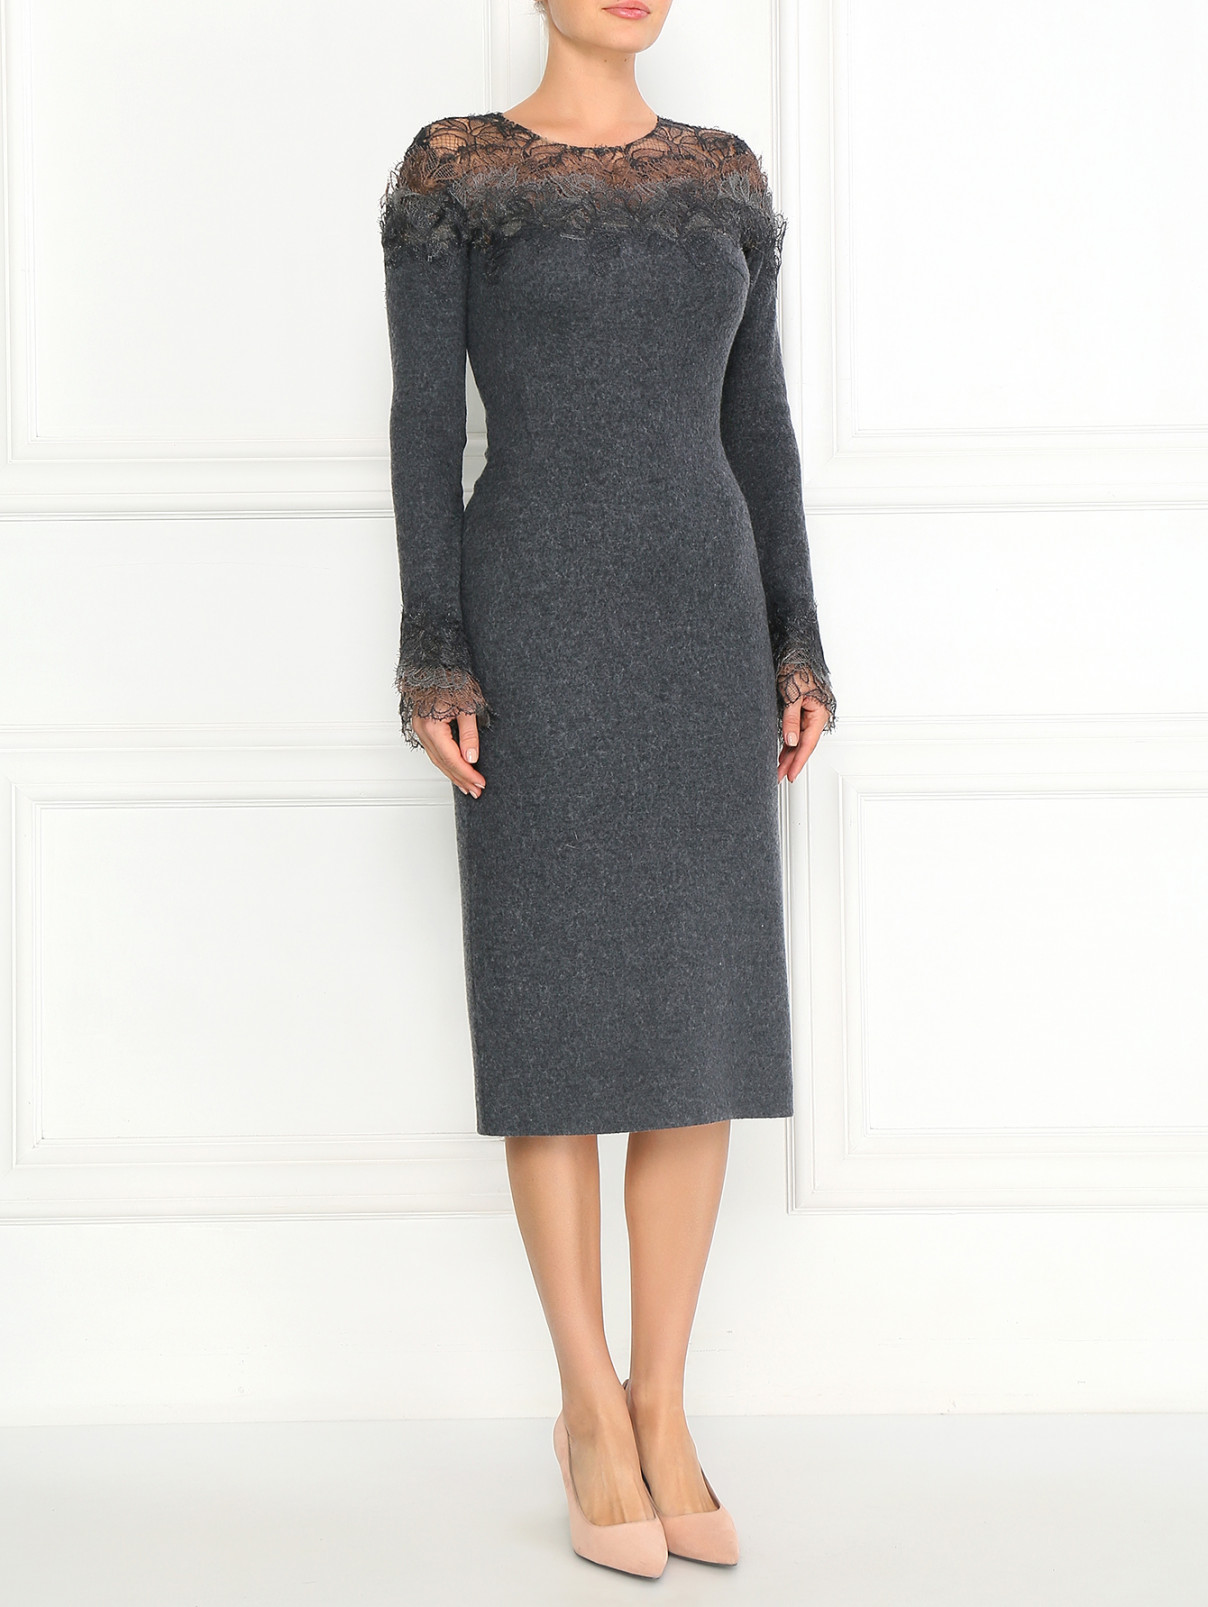 Платье из шерсти и шелка с отделкой из кружева Ermanno Scervino  –  Модель Общий вид  – Цвет:  Серый